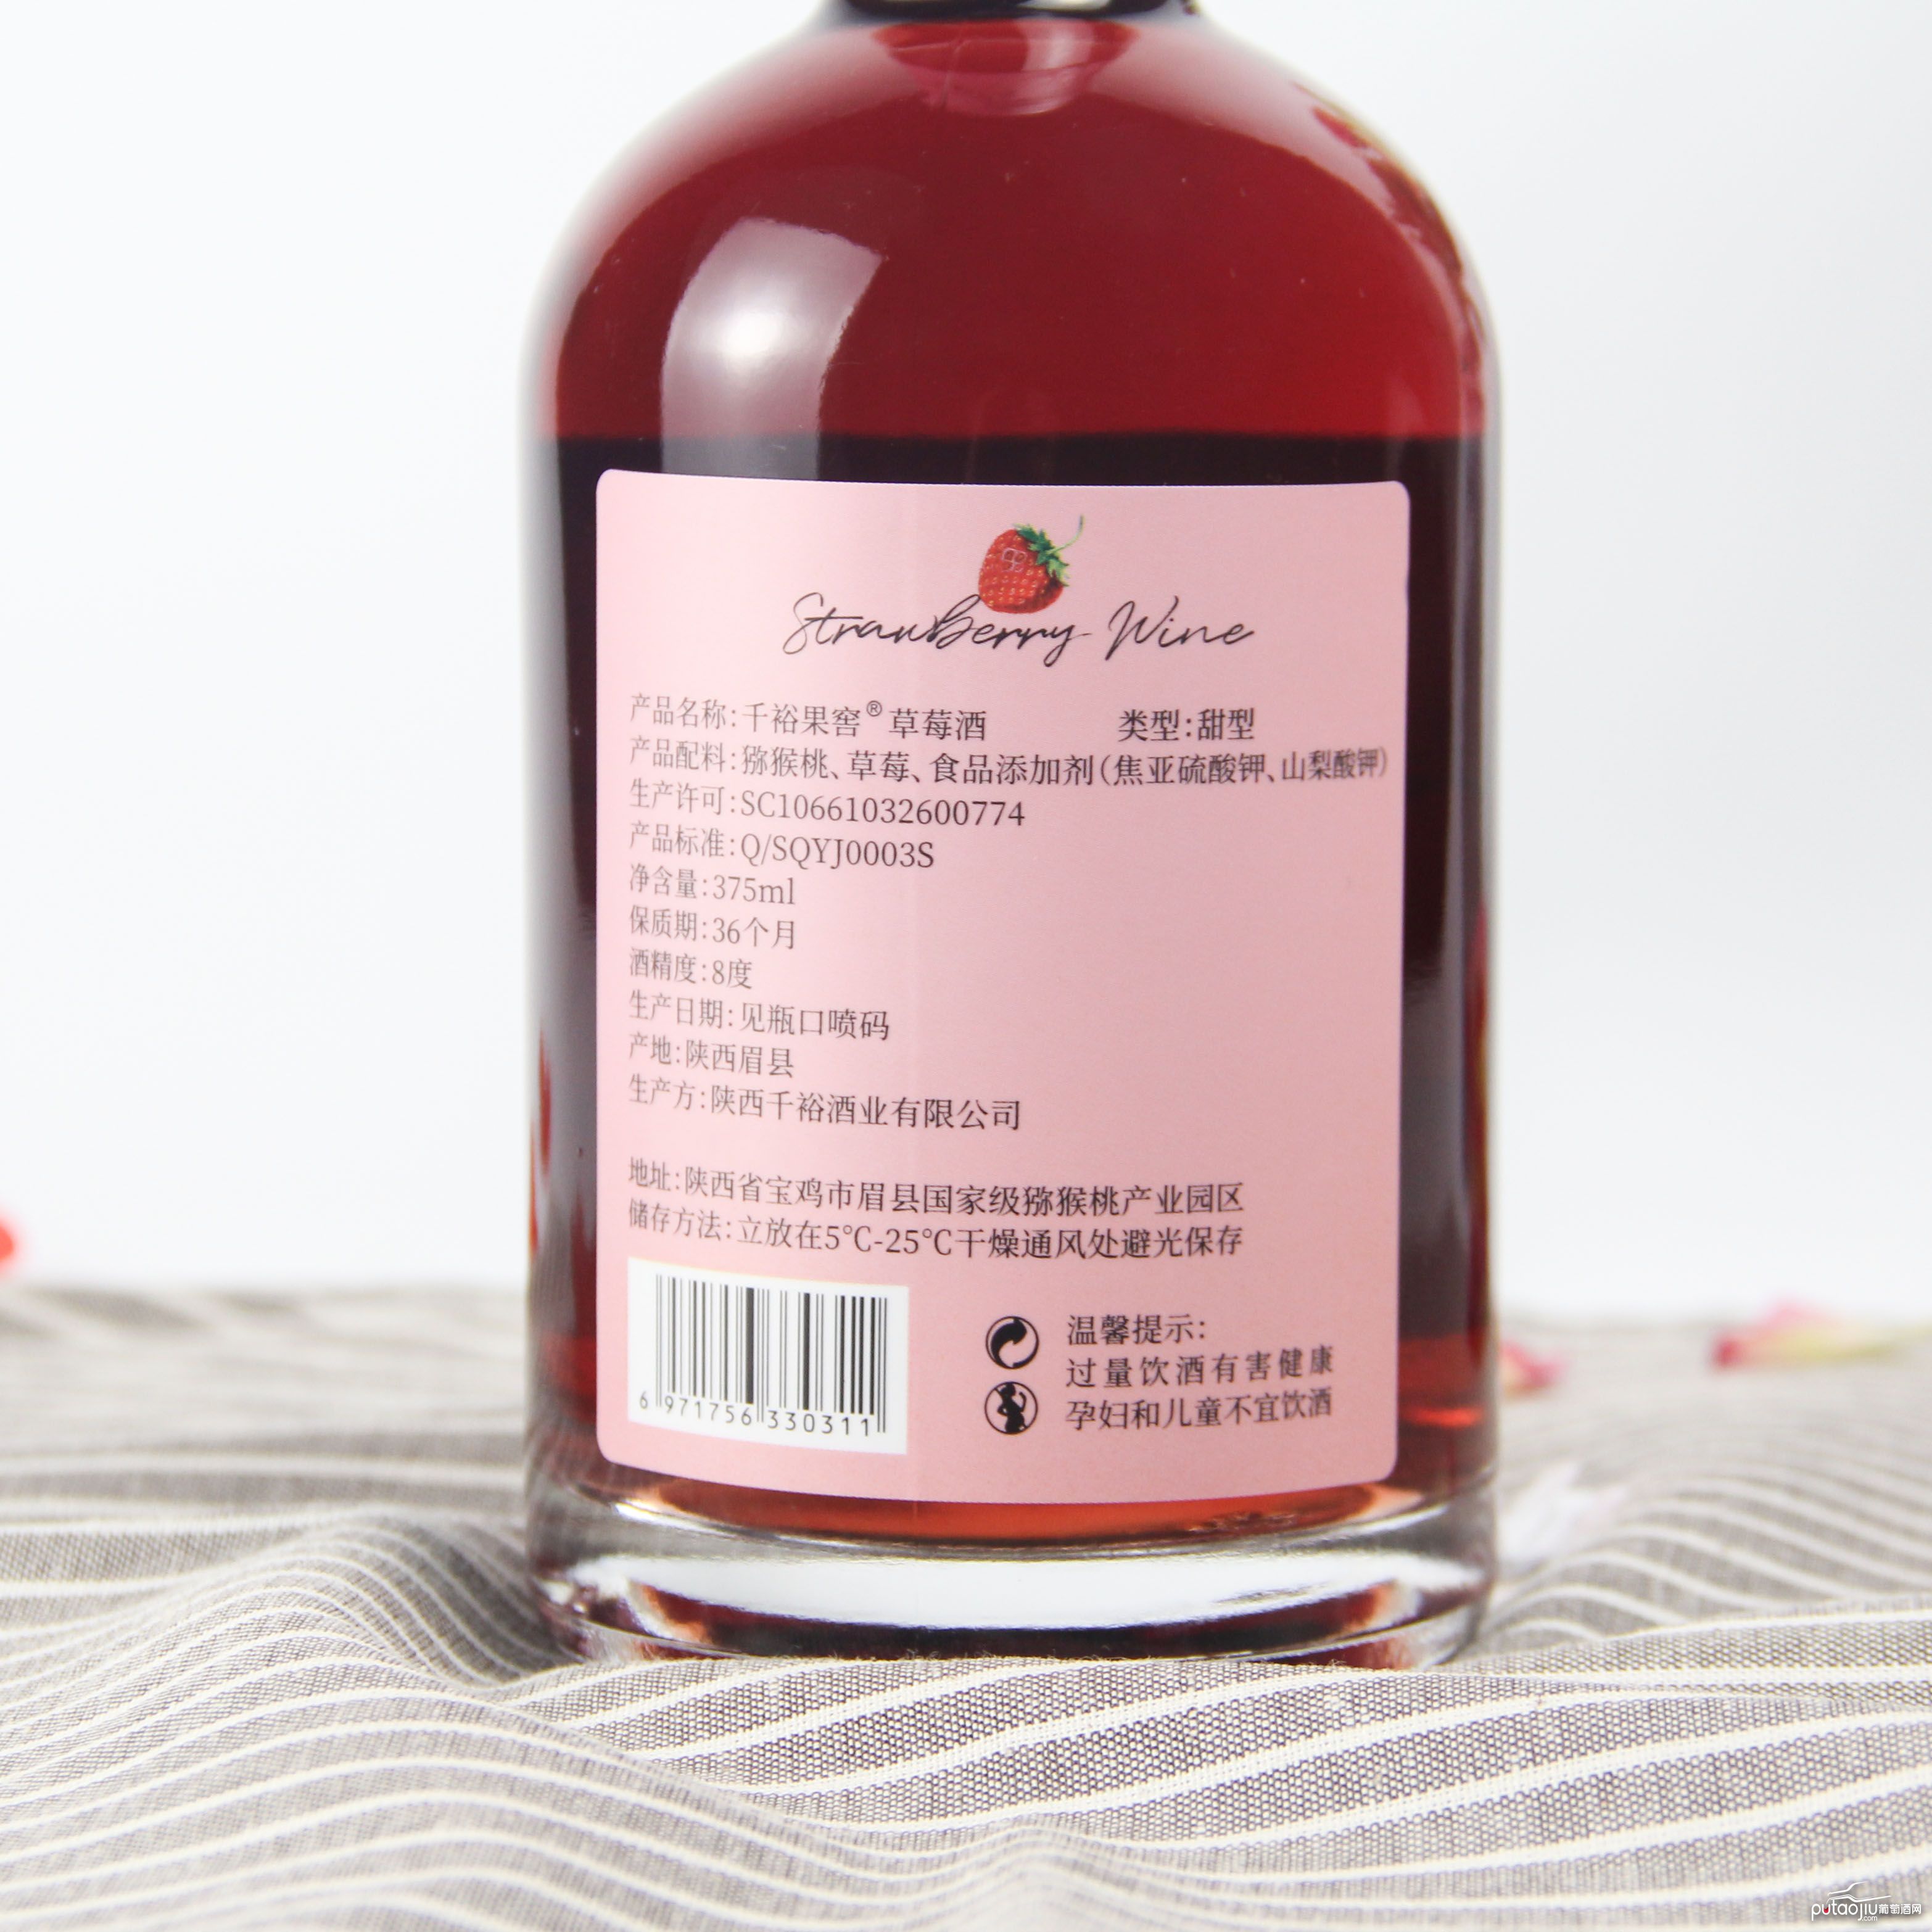 中国陕西产区千裕果窖草莓果酒